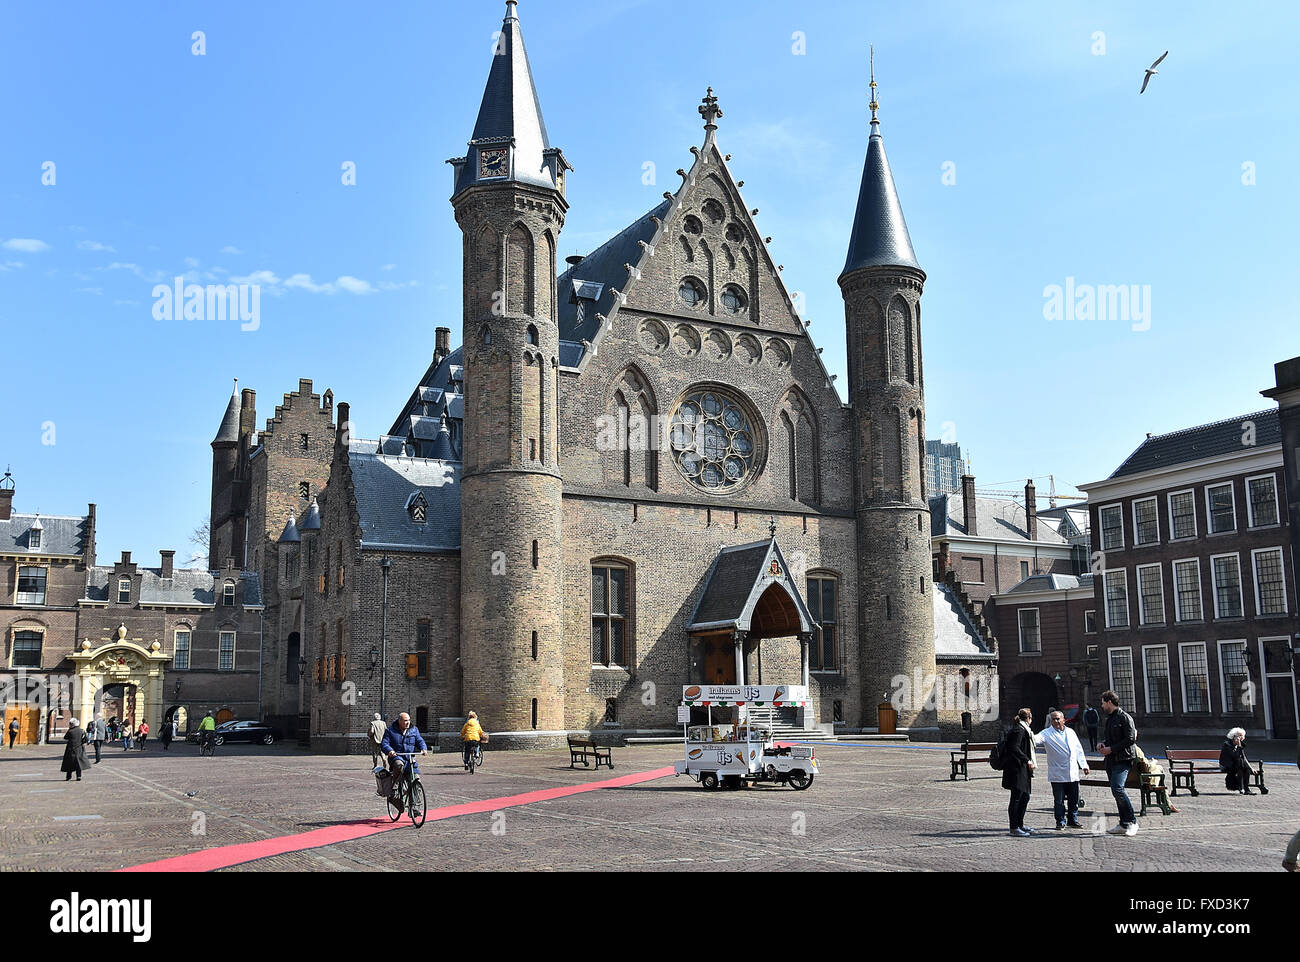 Le Parlement néerlandais de La Haye Binnenhof ( y compris la Ridderzaal (salle des Chevaliers), du Sénat et de la Chambre des représentants des Pays-Bas ) Banque D'Images